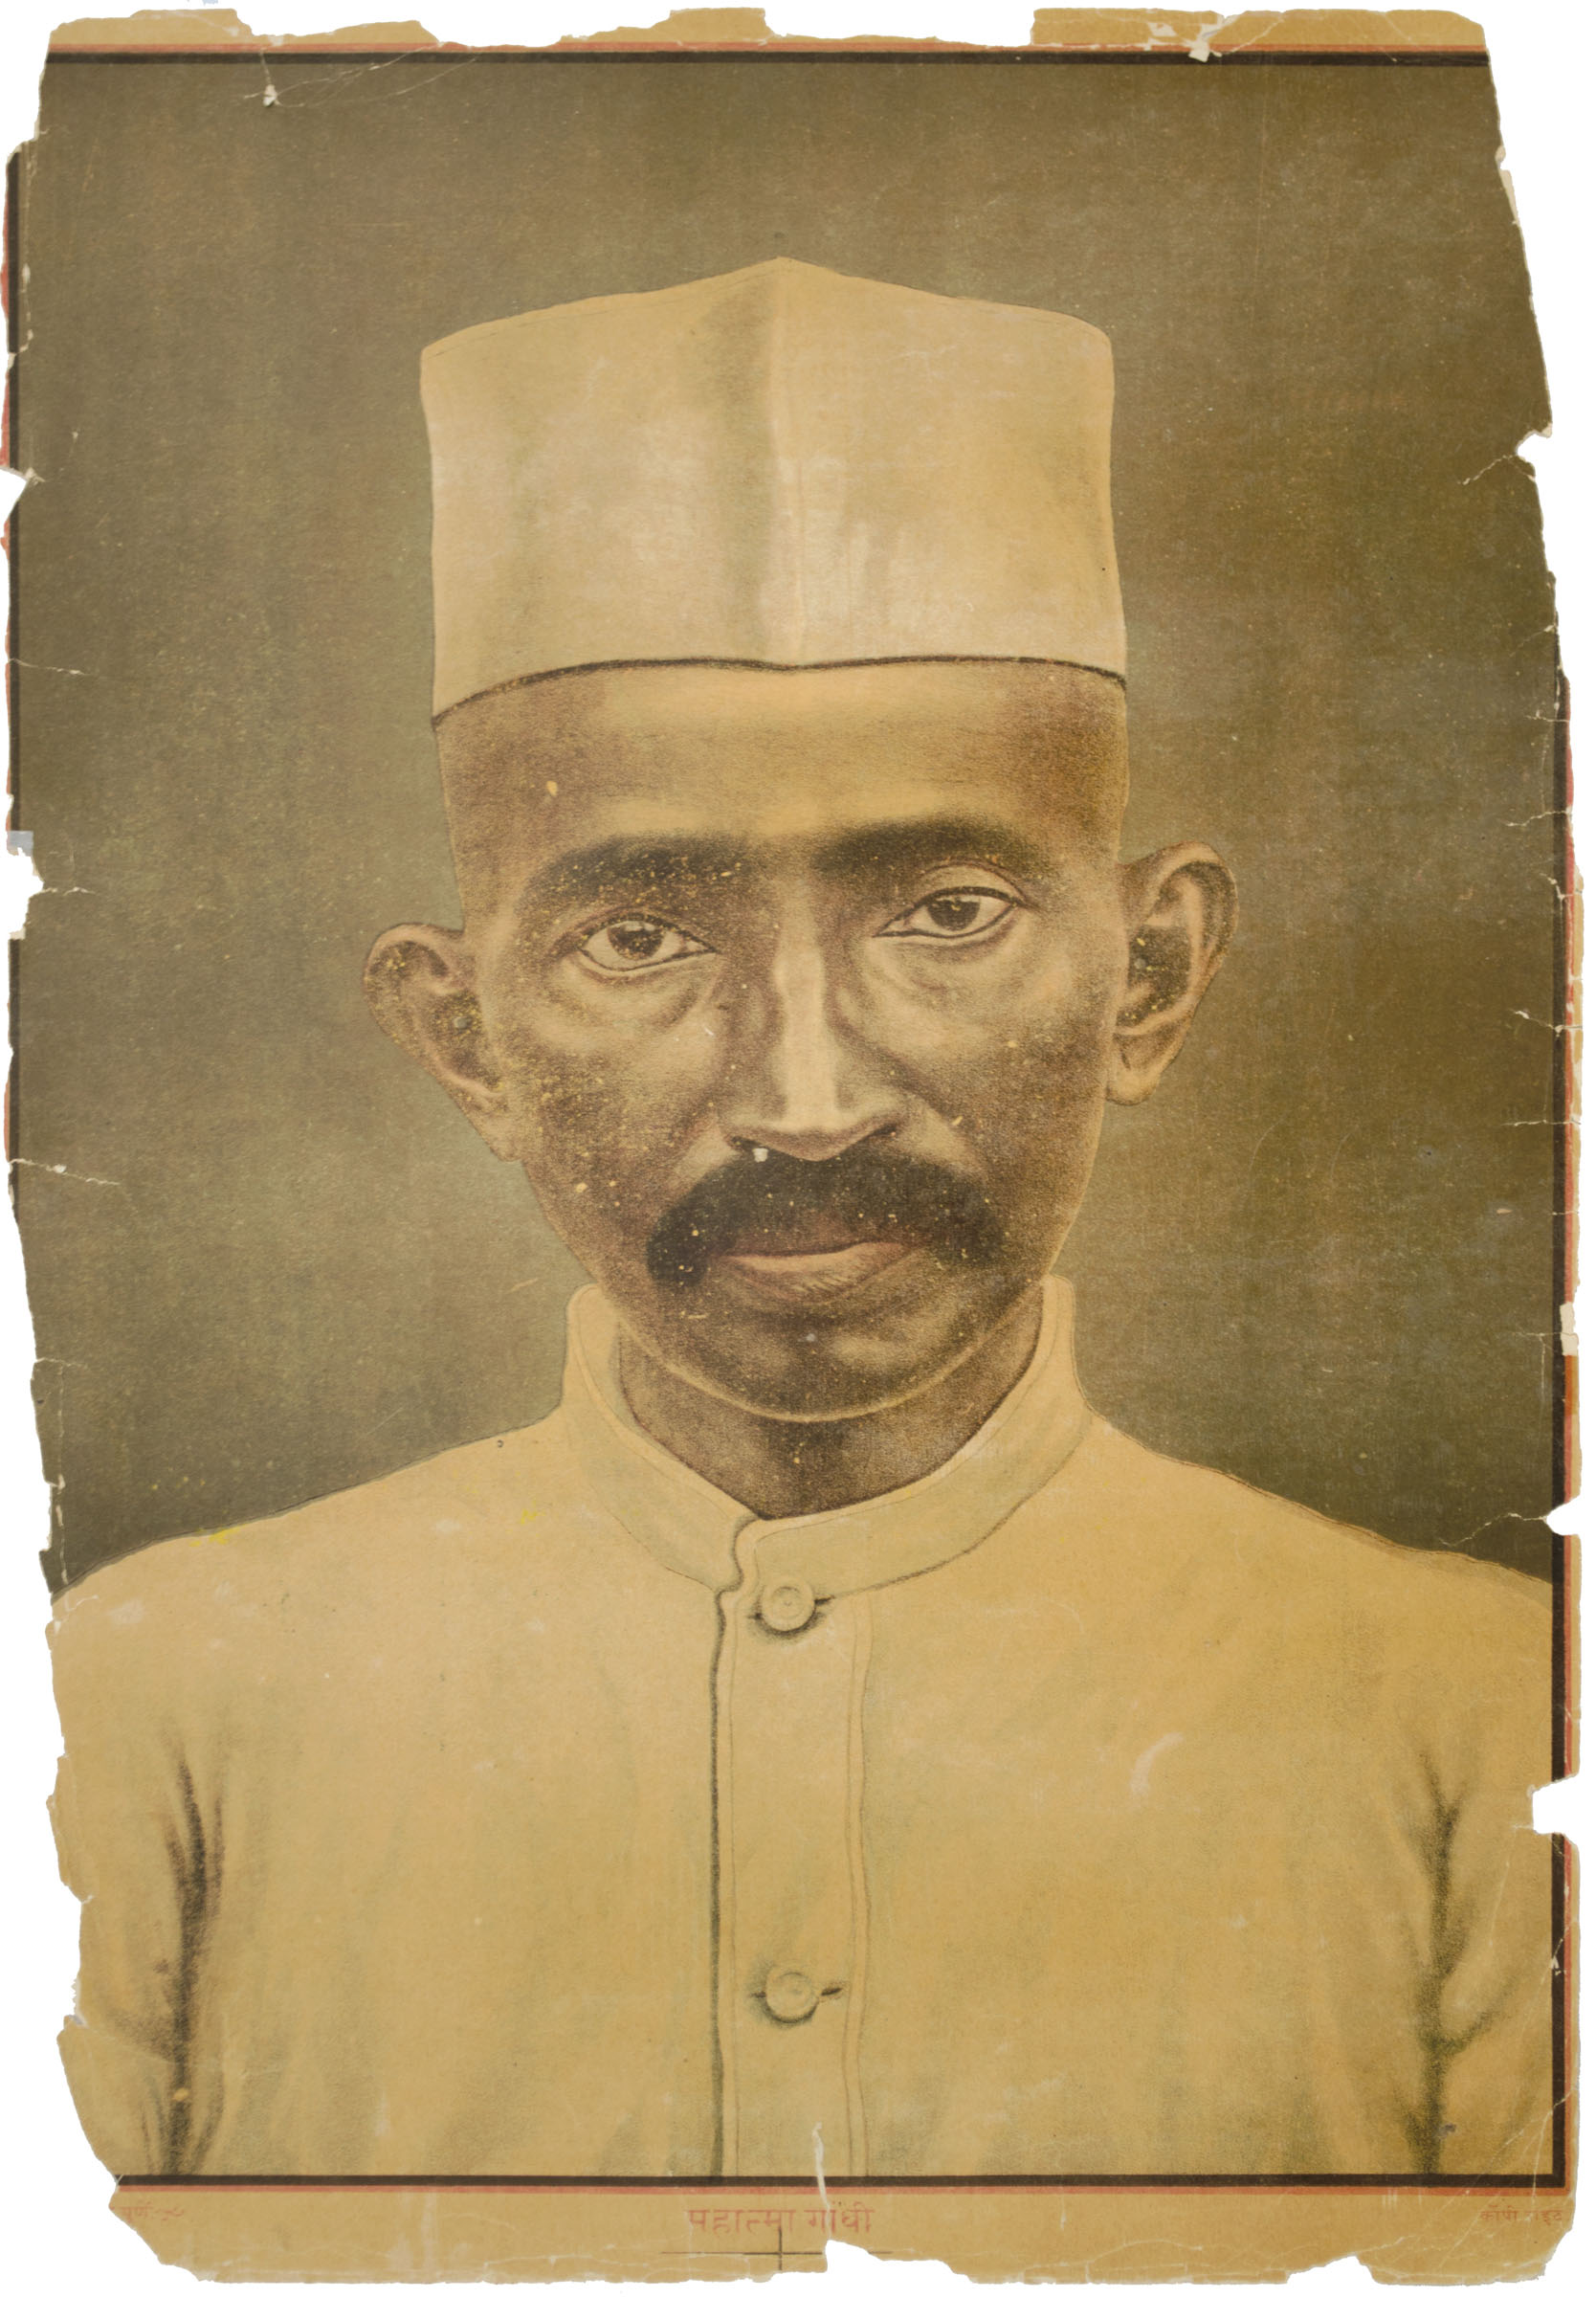 Mahatma Gandhi (1869-1948)